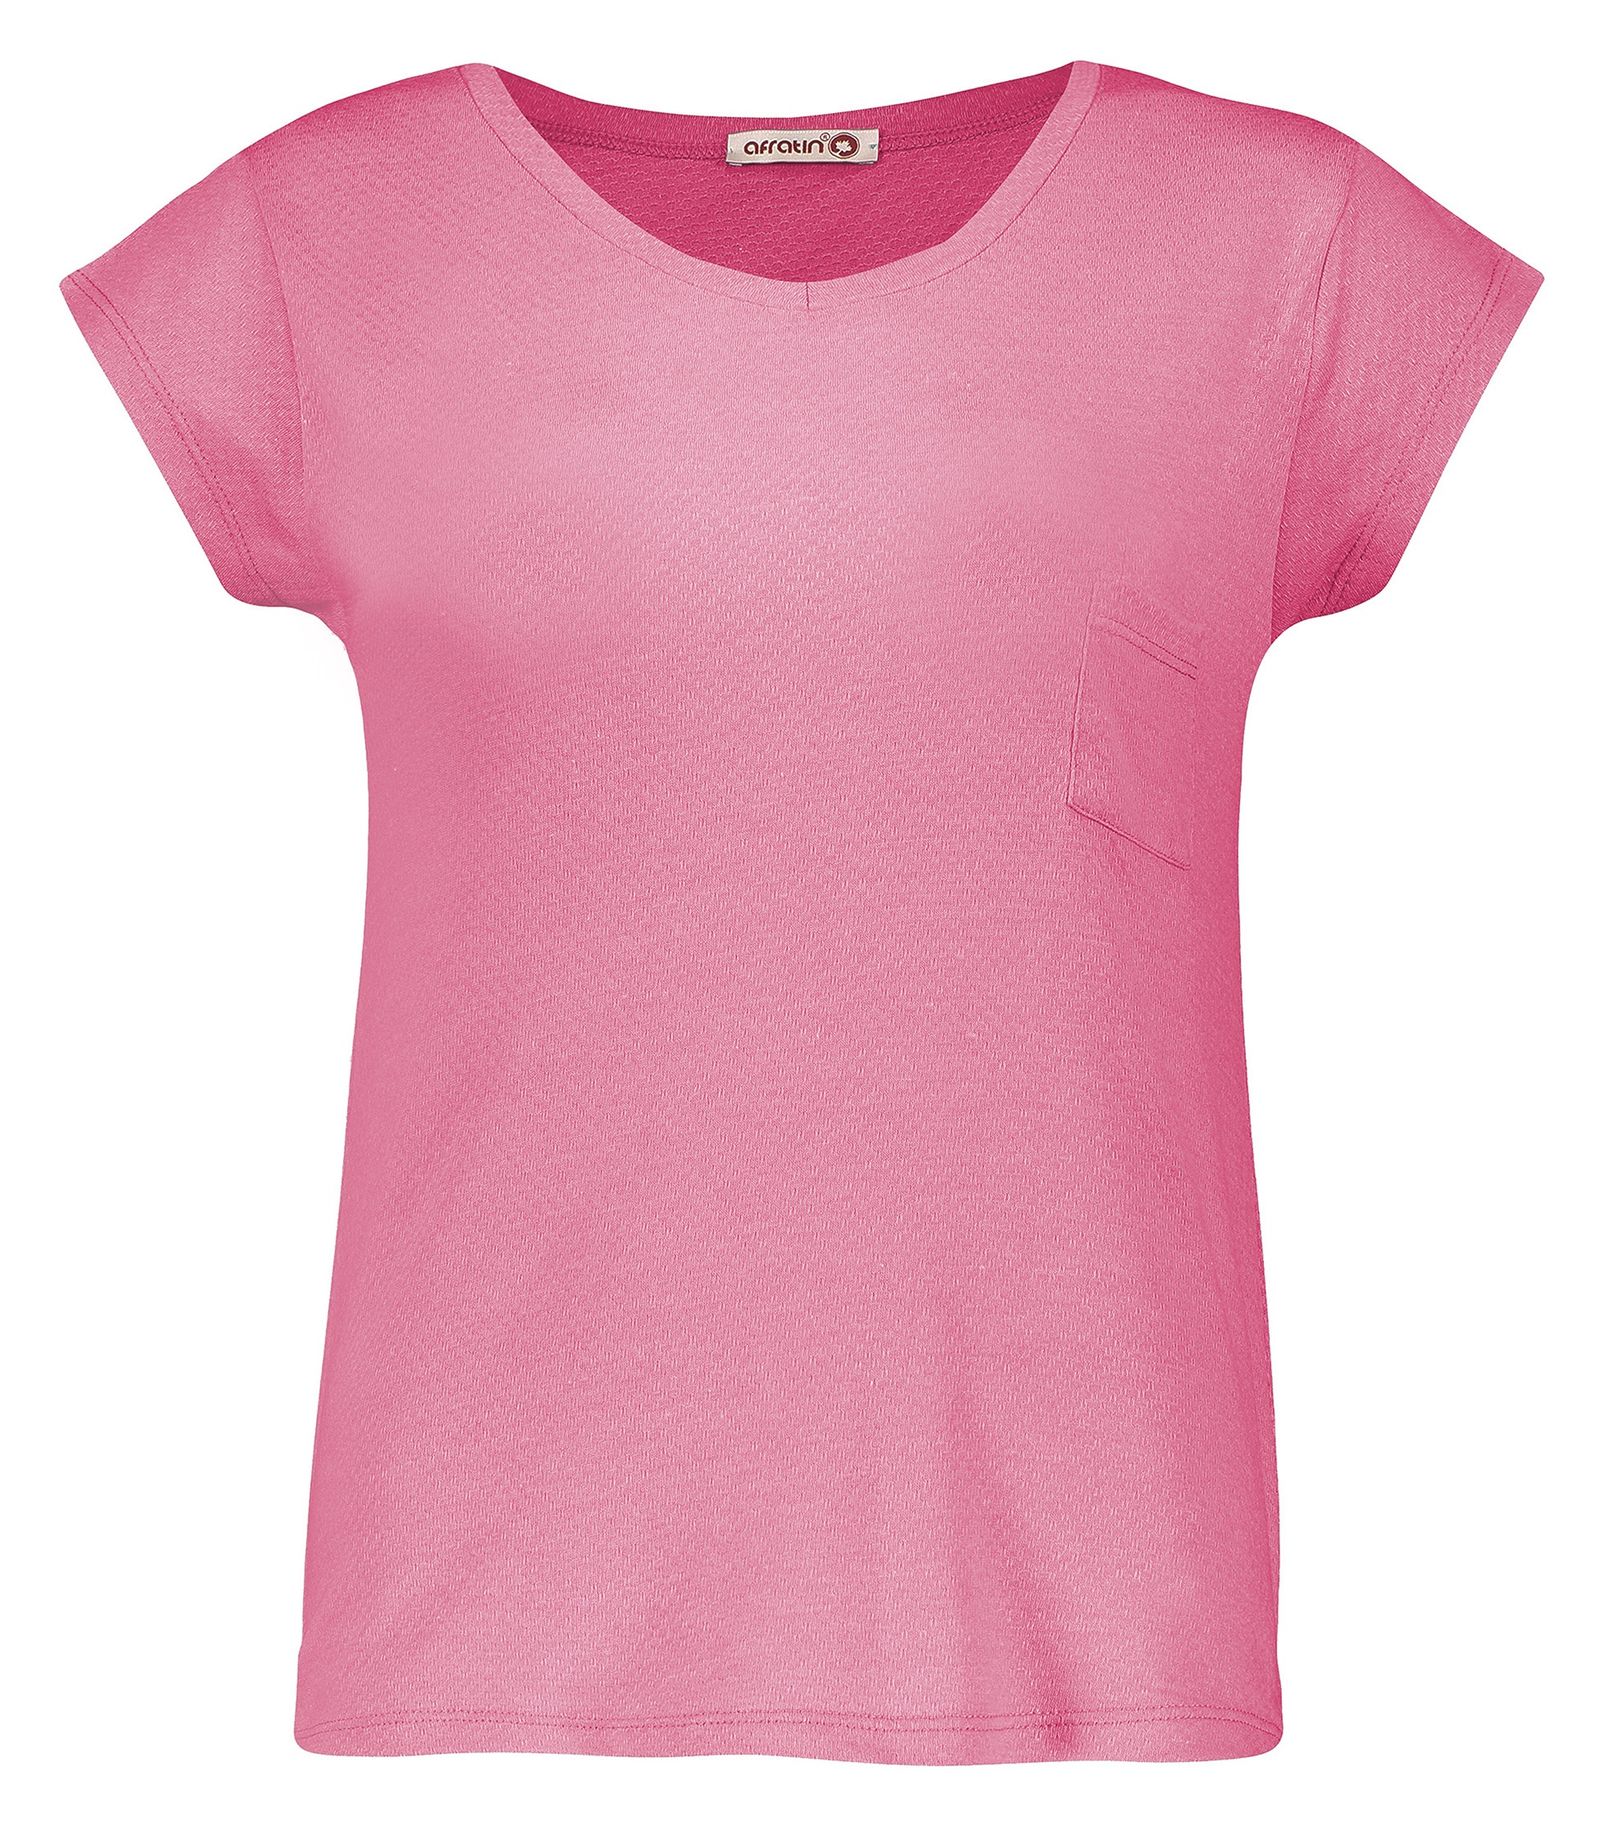 تی شرت زنانه افراتین کد 2515/3 رنگ صورتی -  - 1